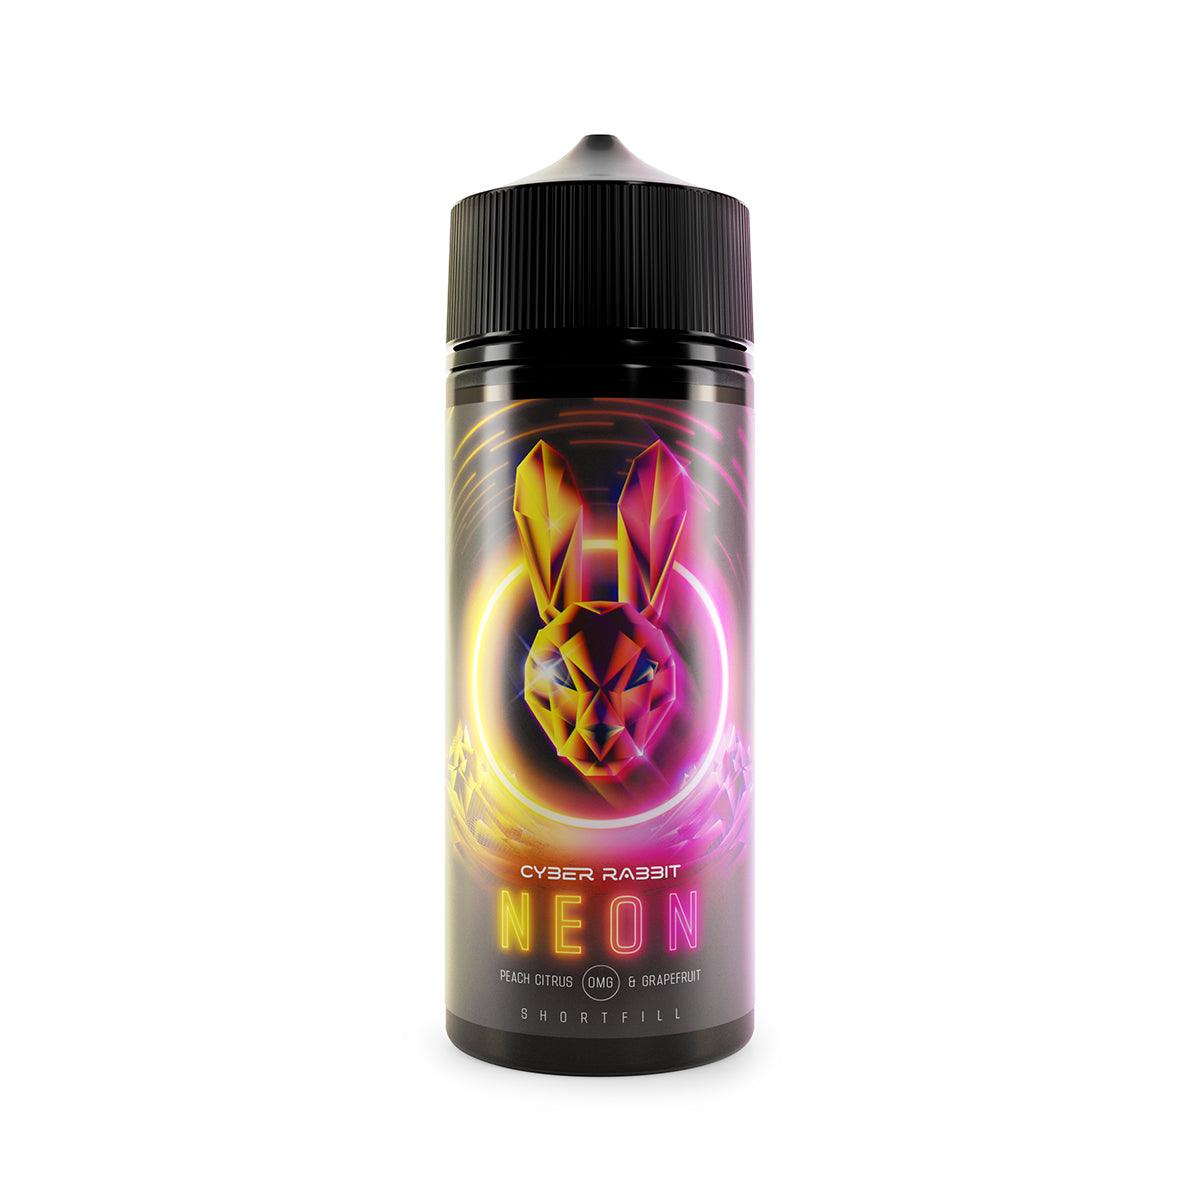 Neon Shortfill E-Liquid by Cyber Rabbit